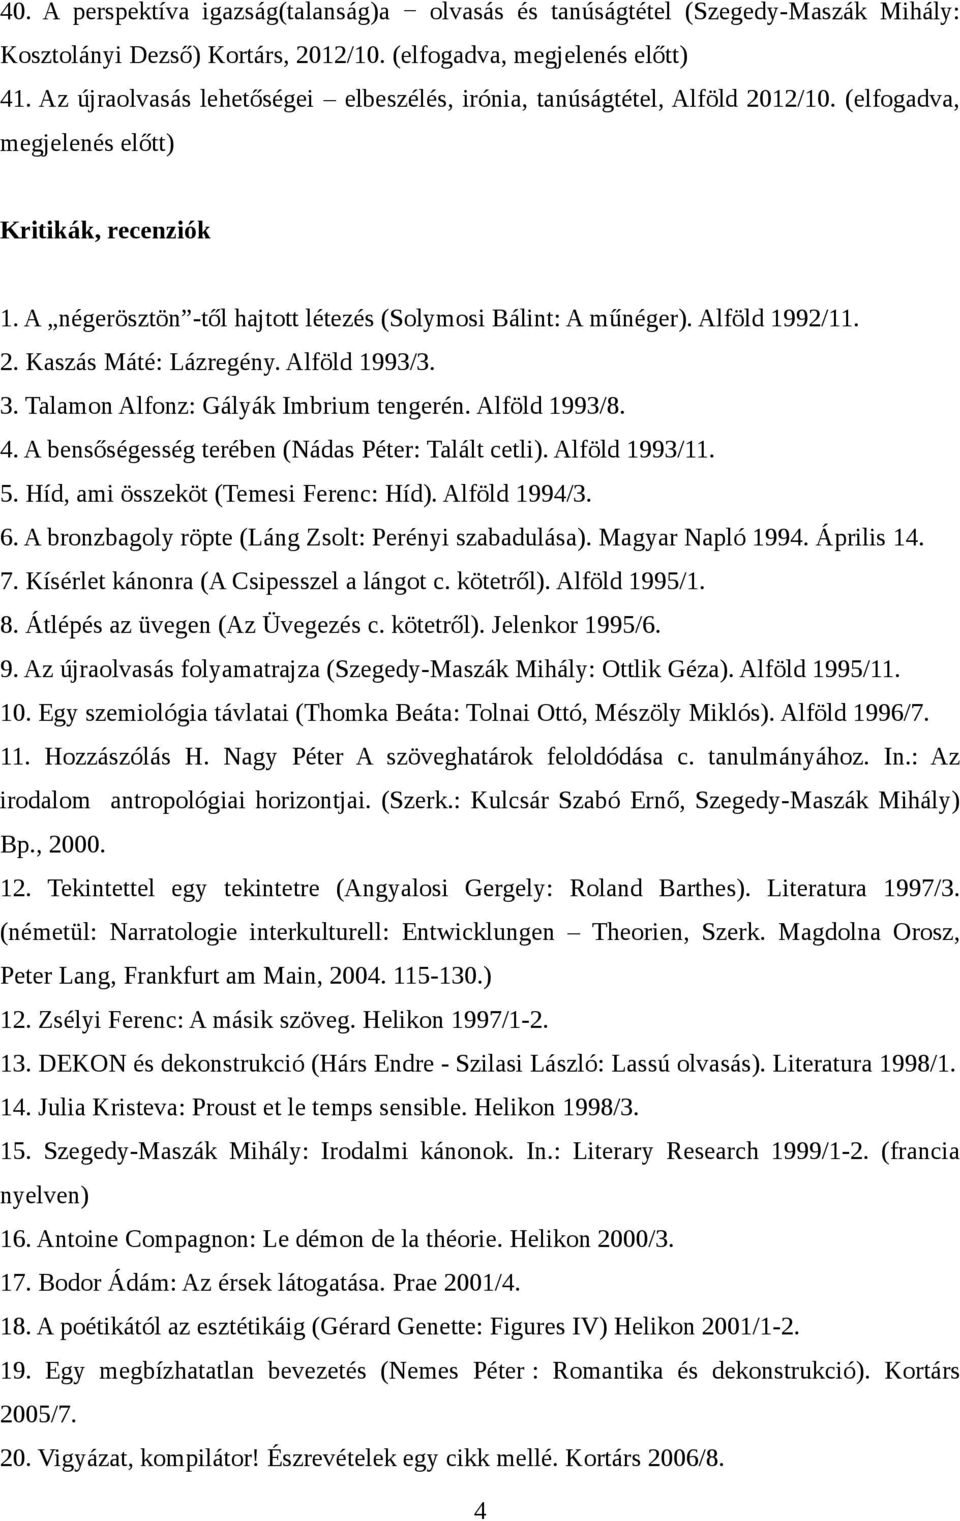 Publikációim listája - PDF Ingyenes letöltés